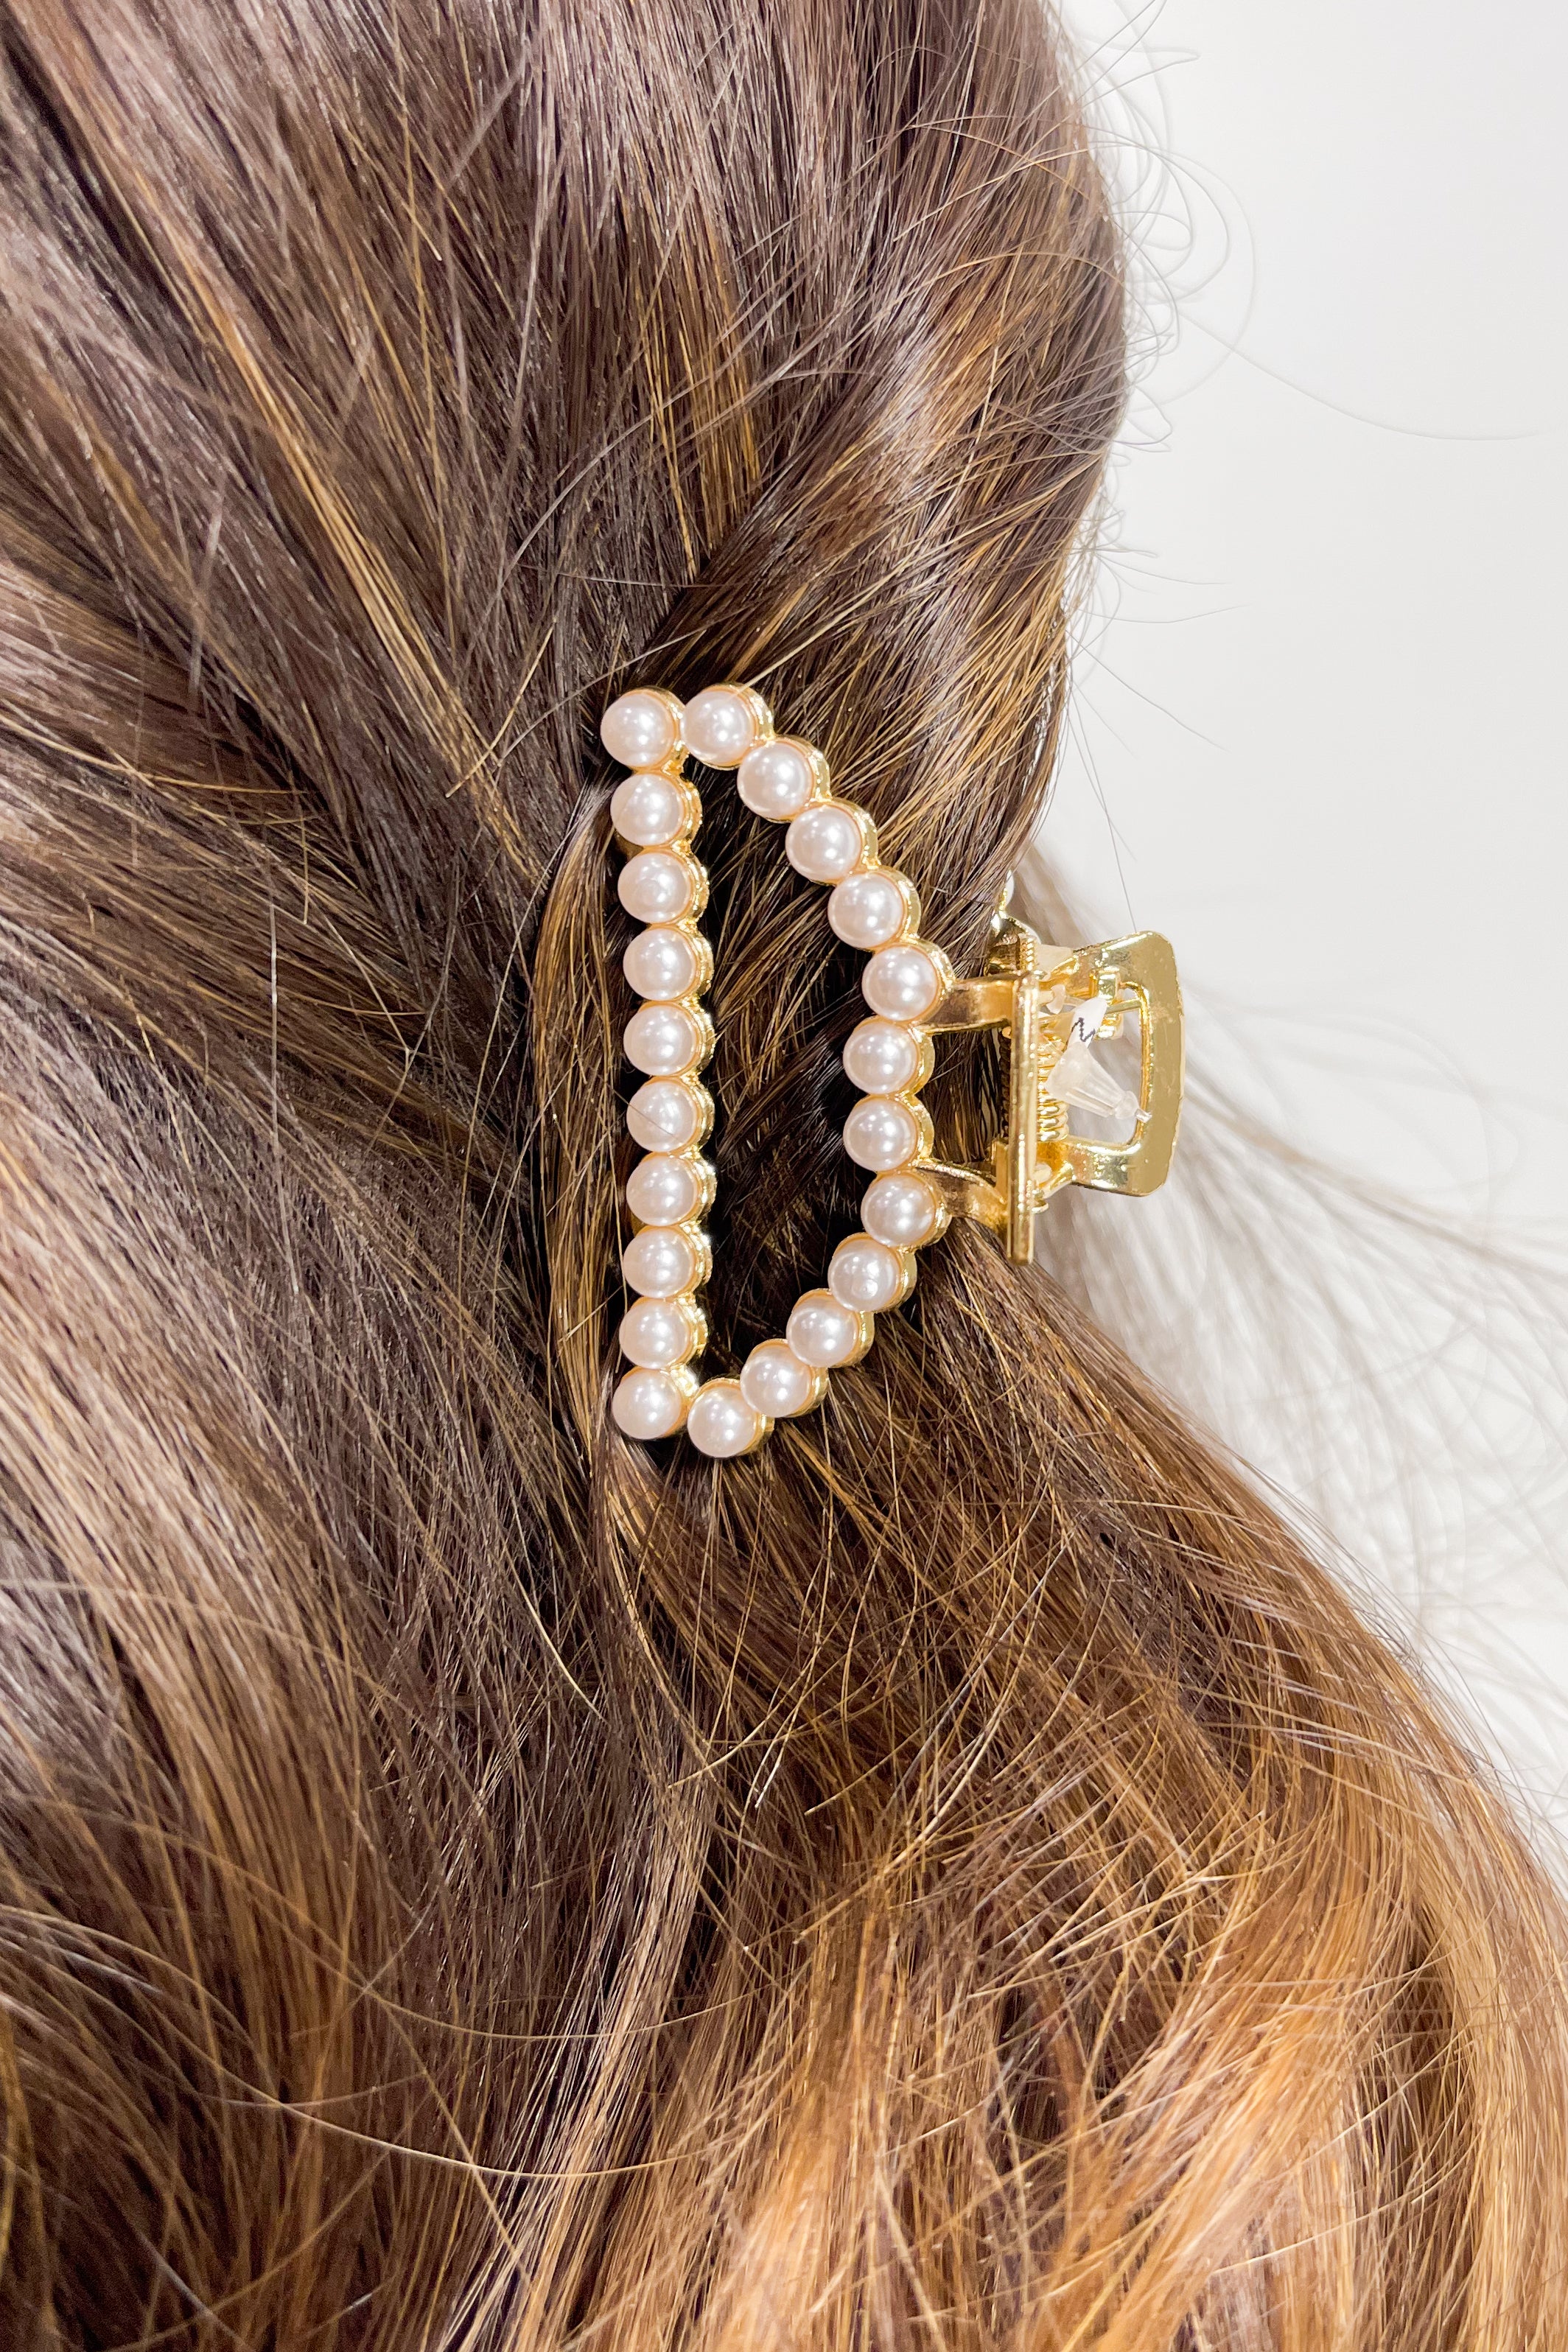 Small Pearl hair clip